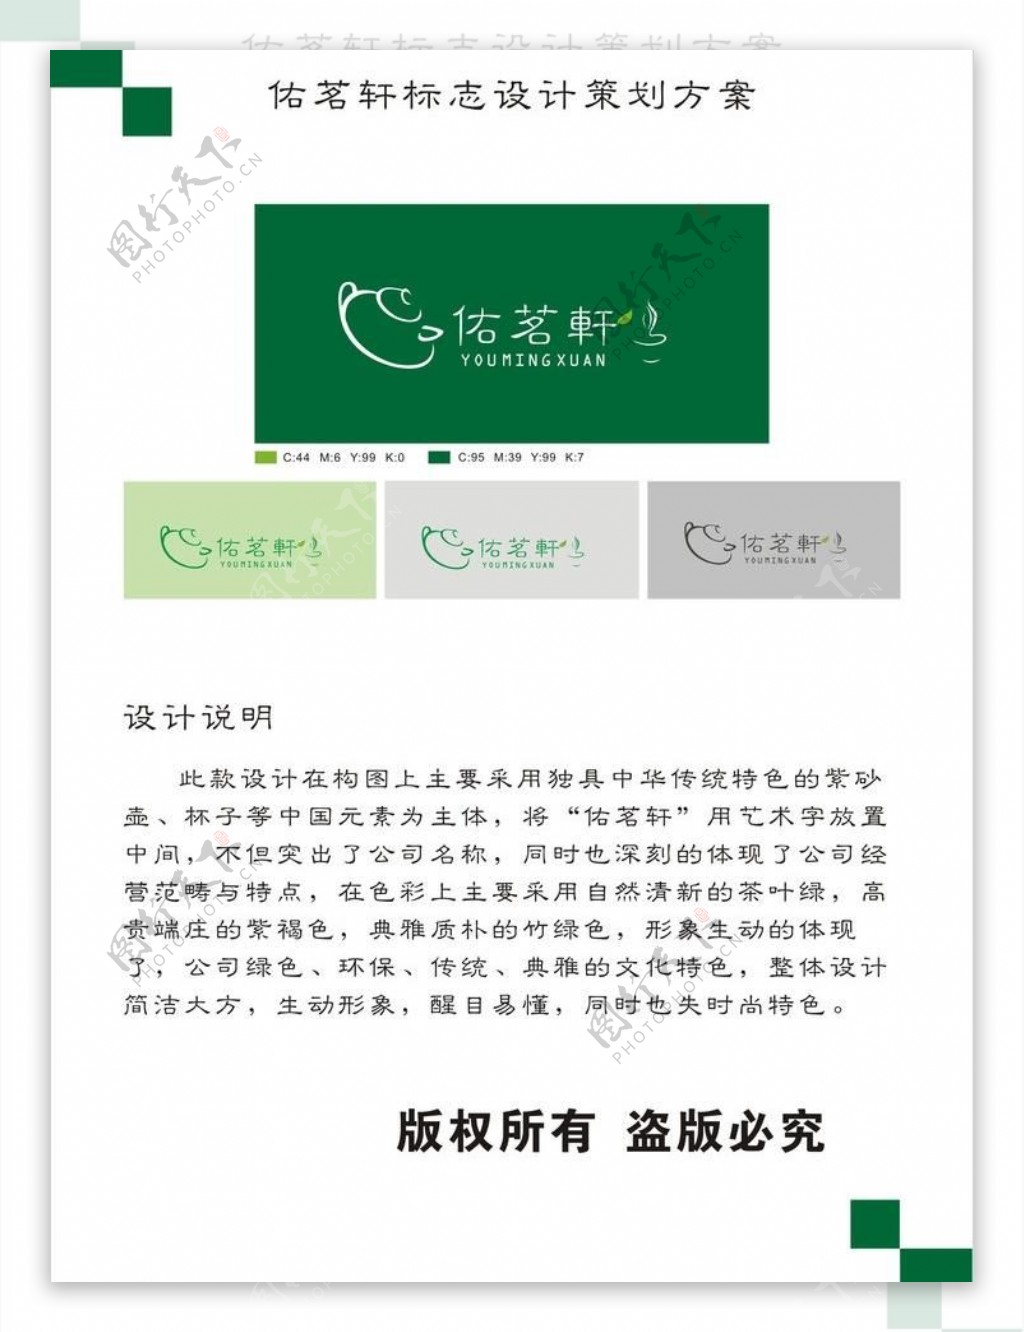 佑铭轩茶社logo图片